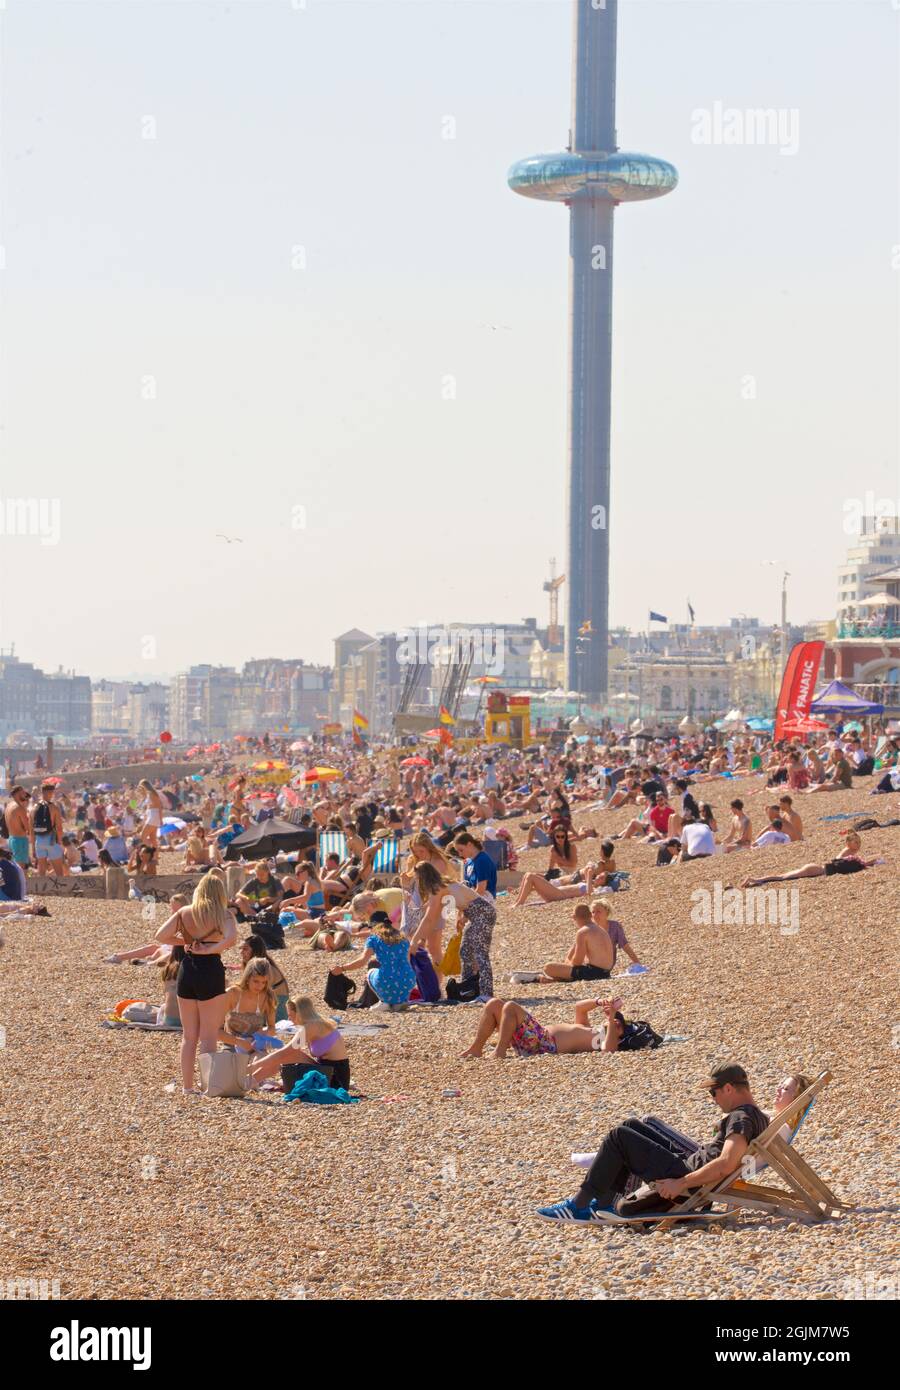 Spiagge affollate del centro di Brighton e Hove. A ovest del molo del Palazzo di Brighton. Vacanze estive. Sussex, Inghilterra, Regno Unito. I360 torreggiante sopra. Foto Stock